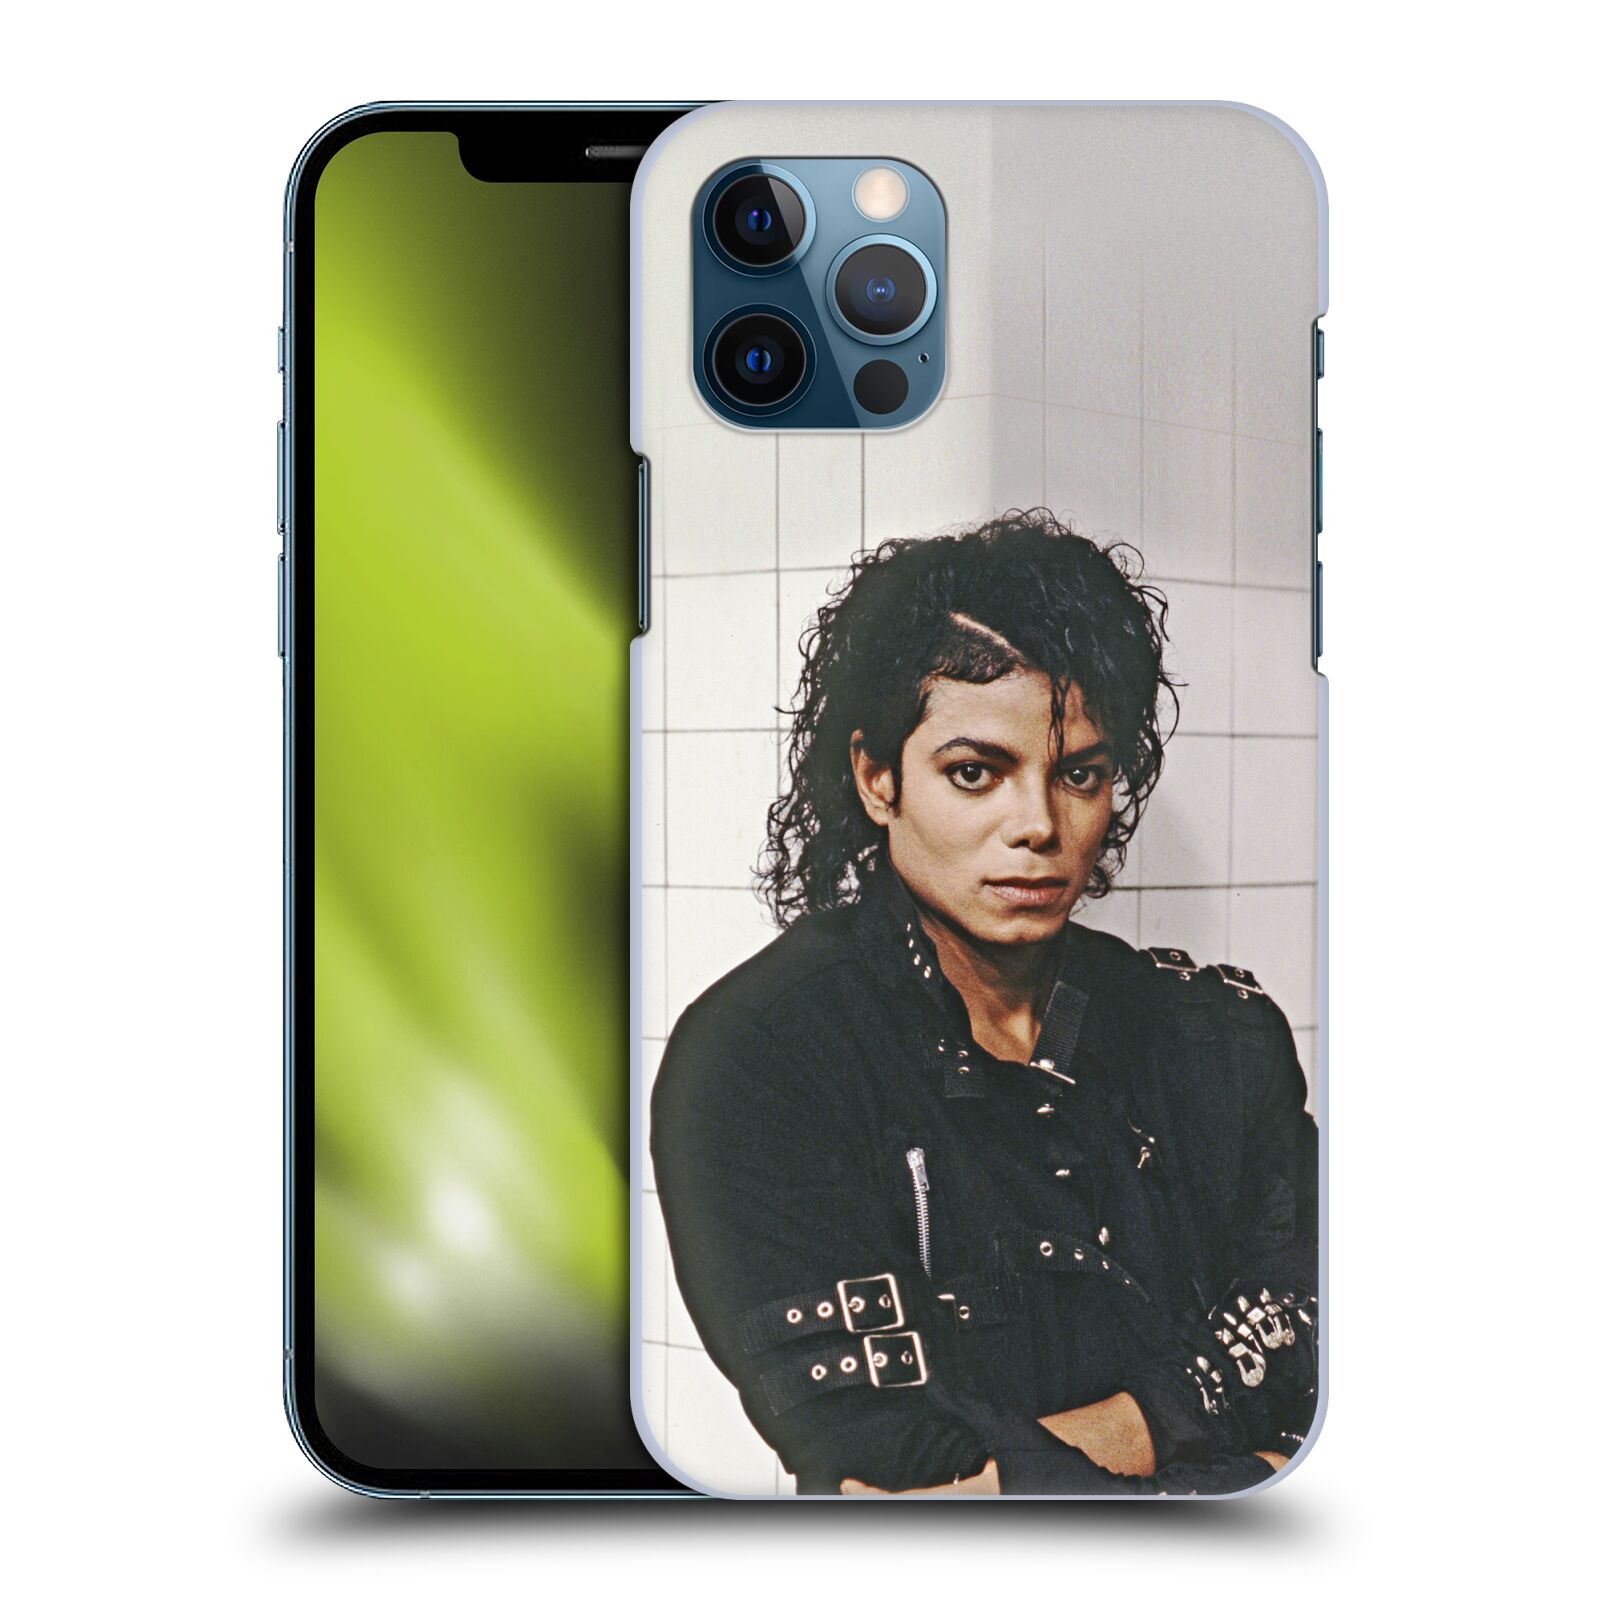 Zadní obal pro mobil Apple iPhone 12 / iPhone 12 Pro - HEAD CASE - Zpěvák Michael Jackson - pohled